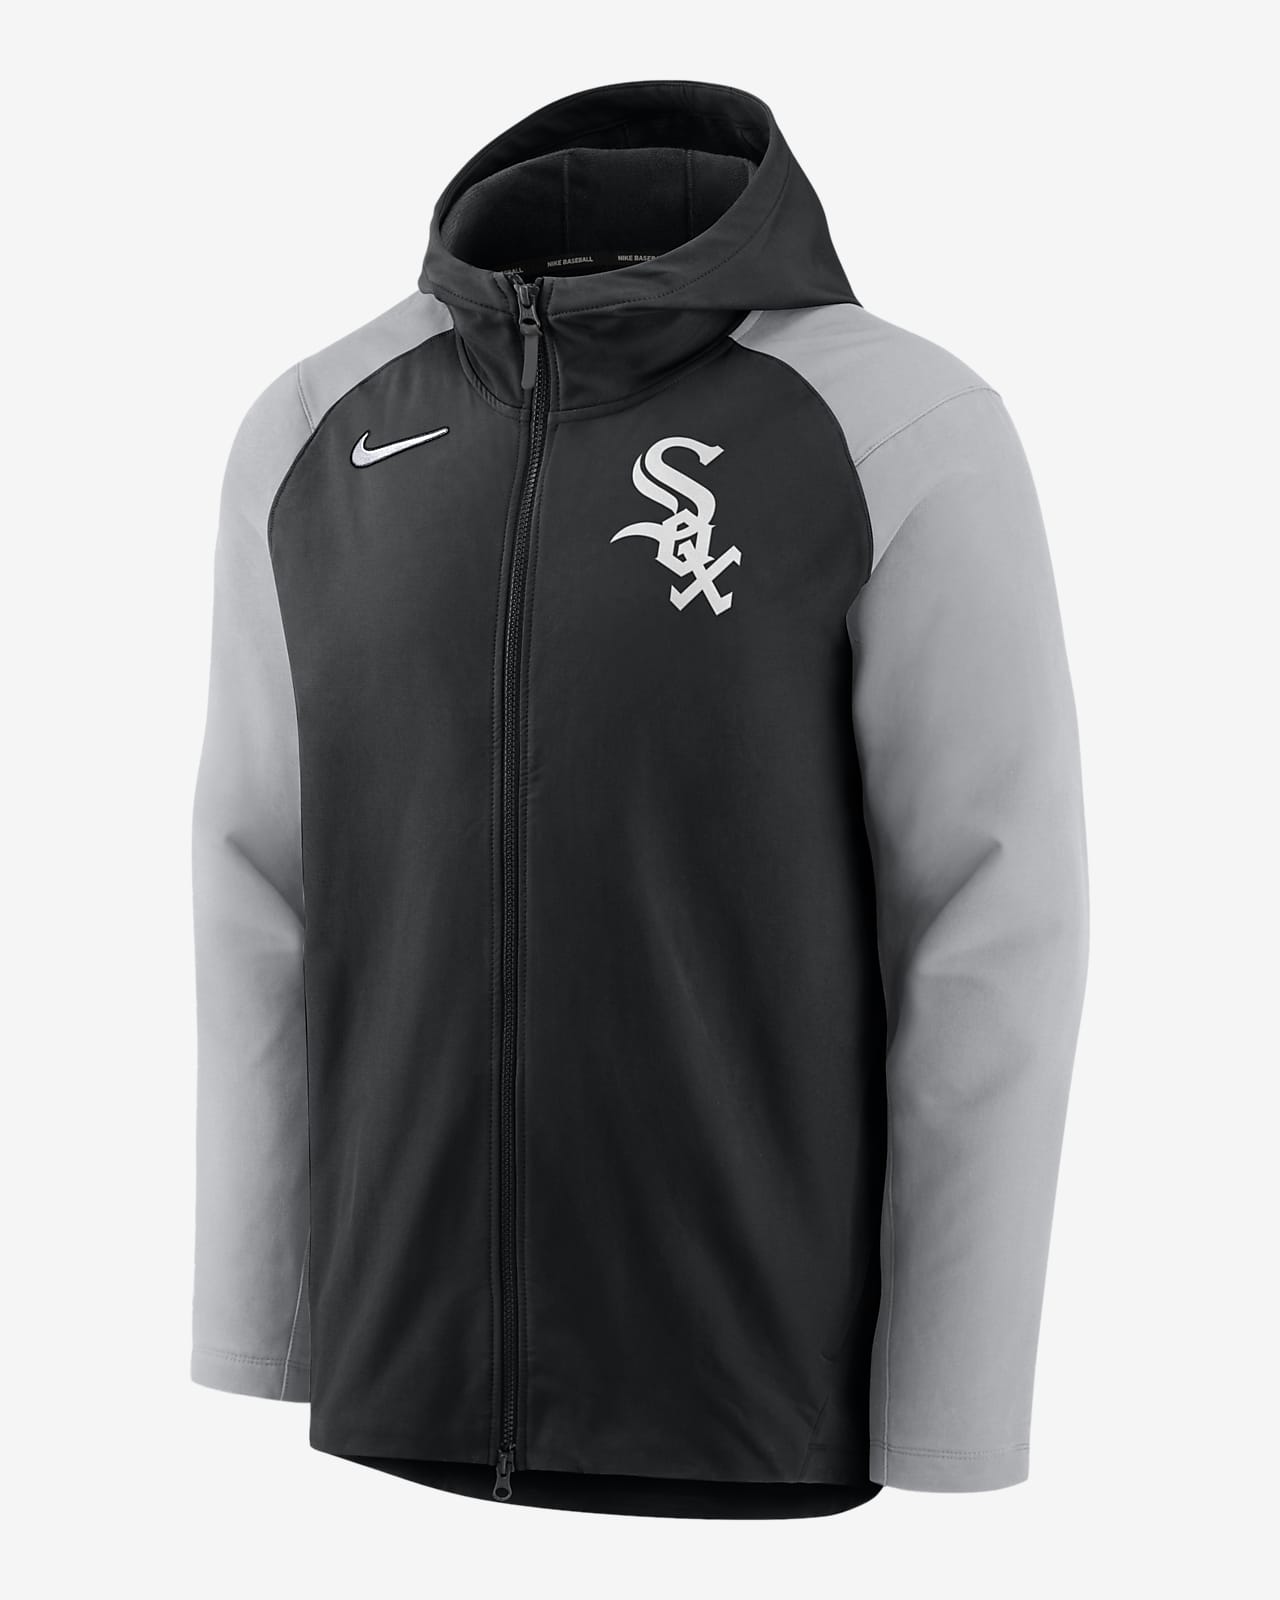 Nike Player (MLB Chicago White Sox) Men's Full-Zip Jacket.